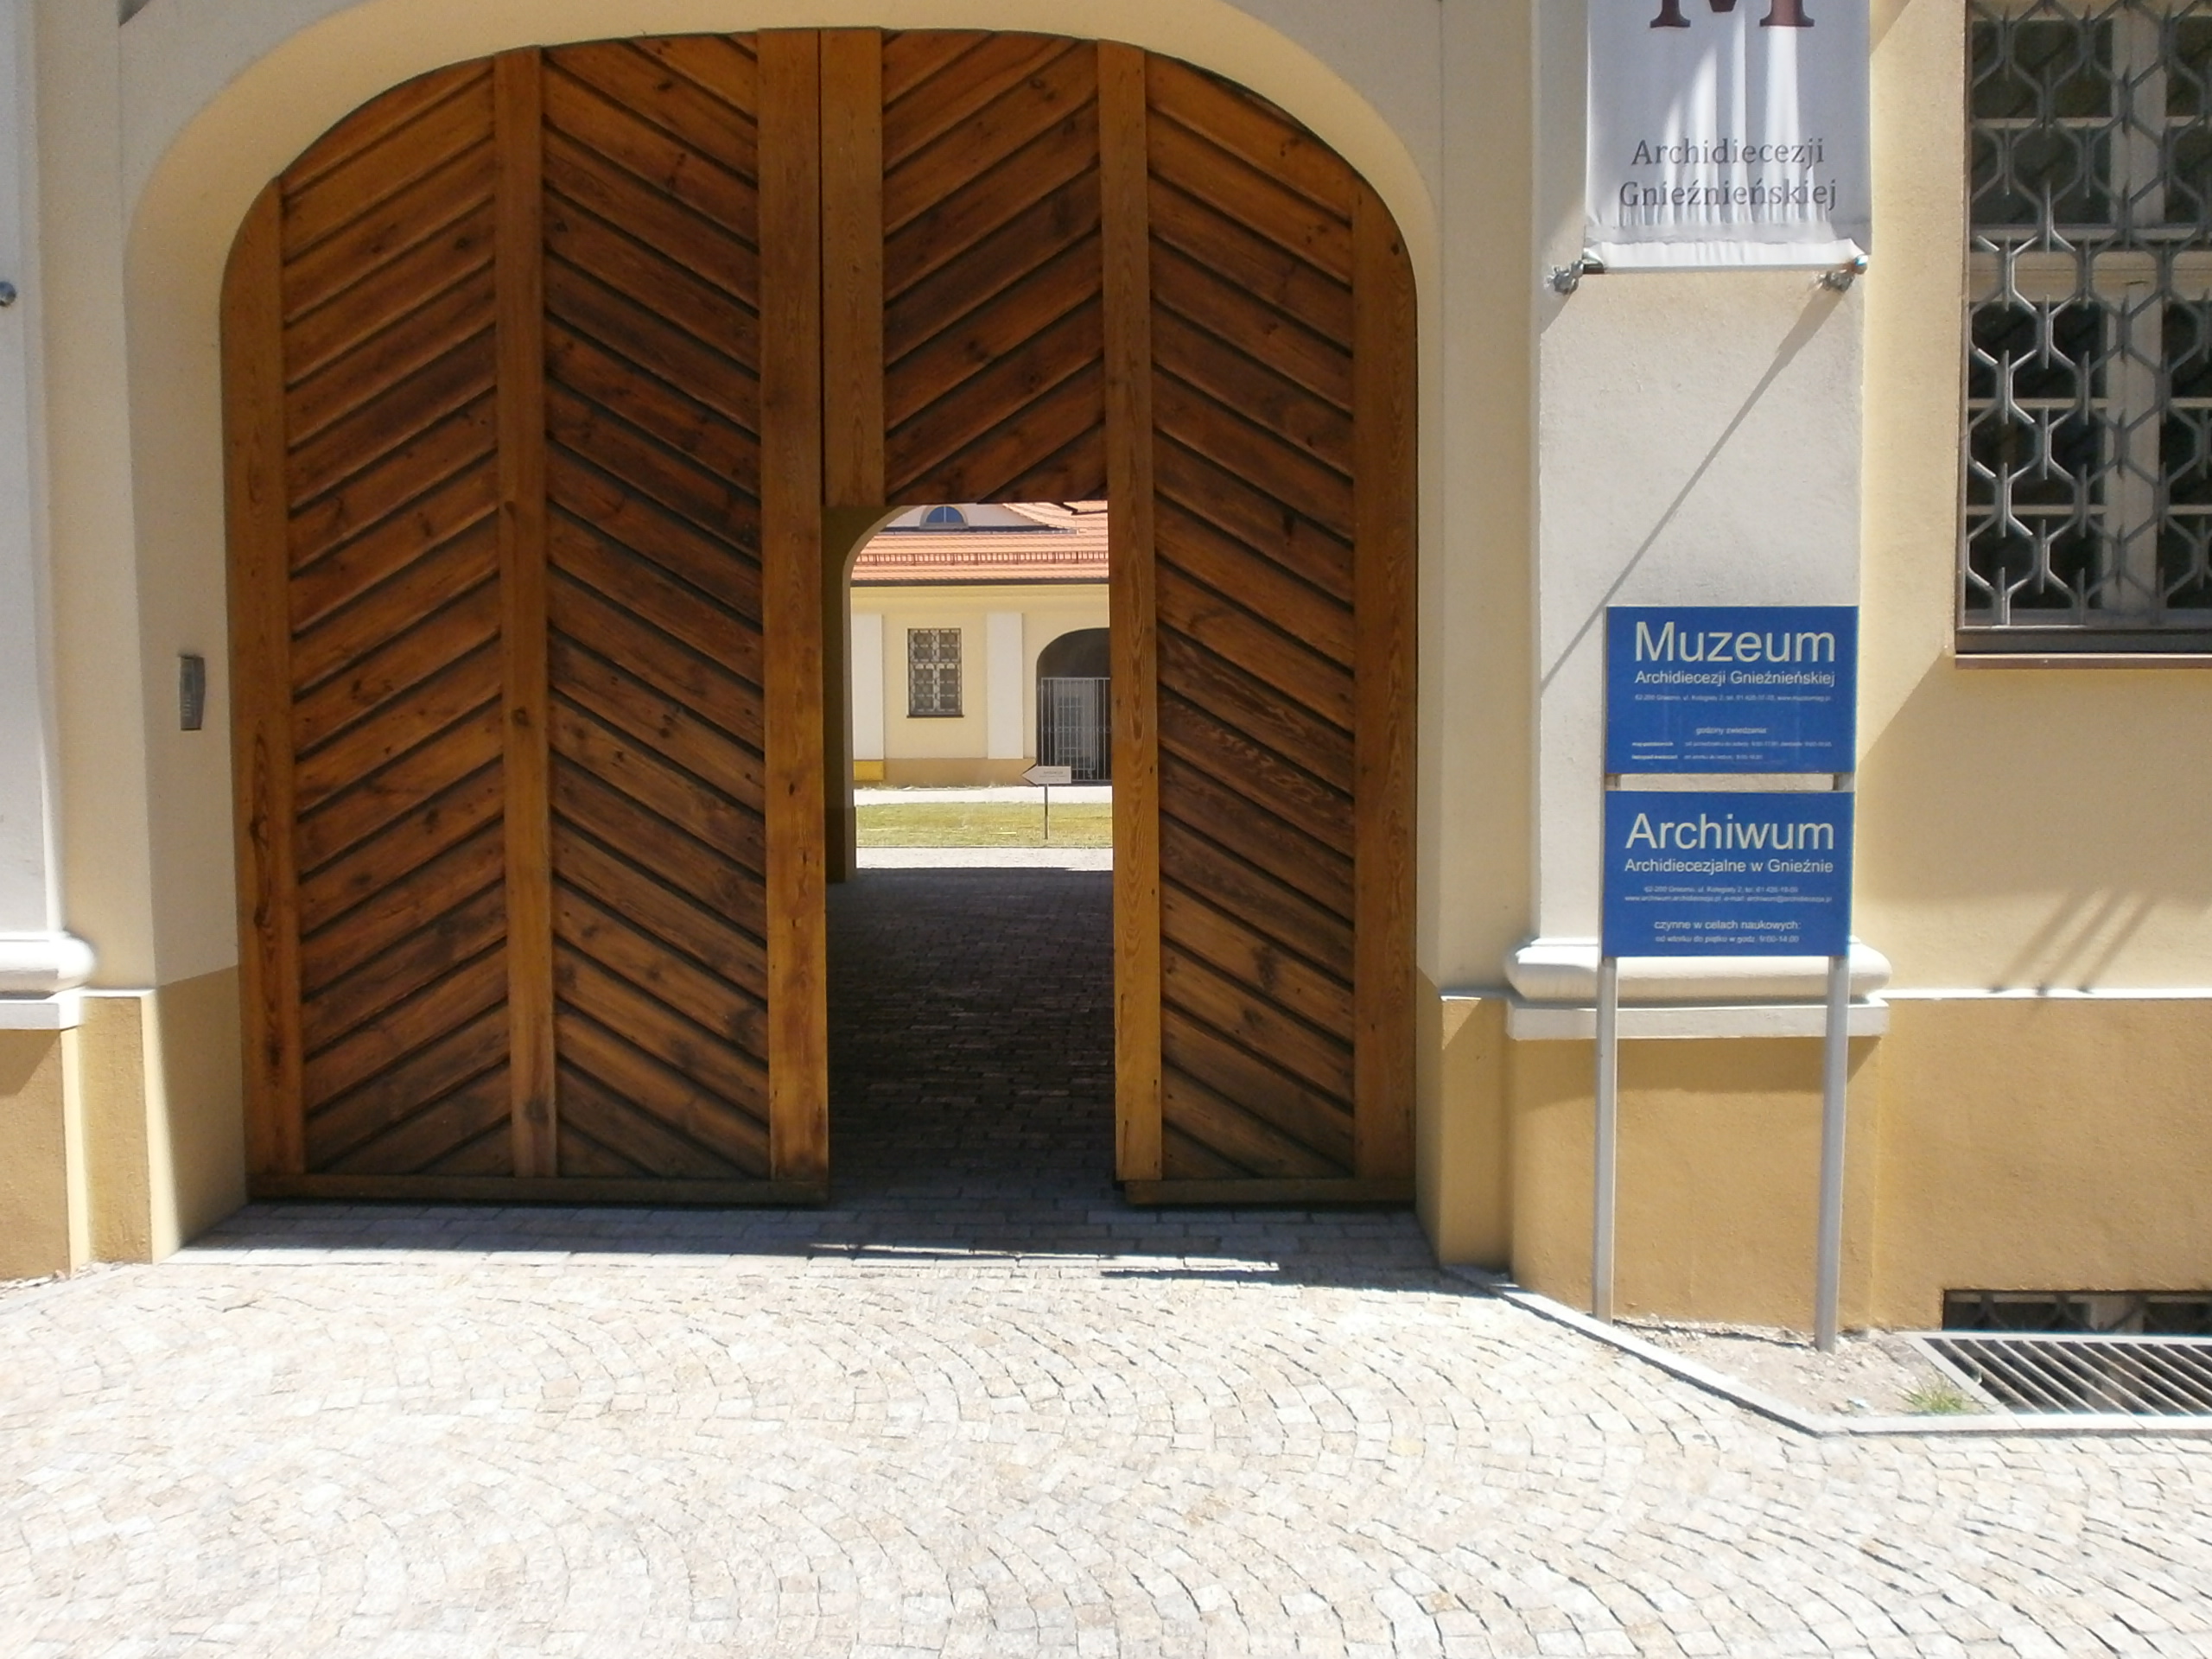 brama, która prowadzi do muzeum (ze zbyt wąskim przejściem)